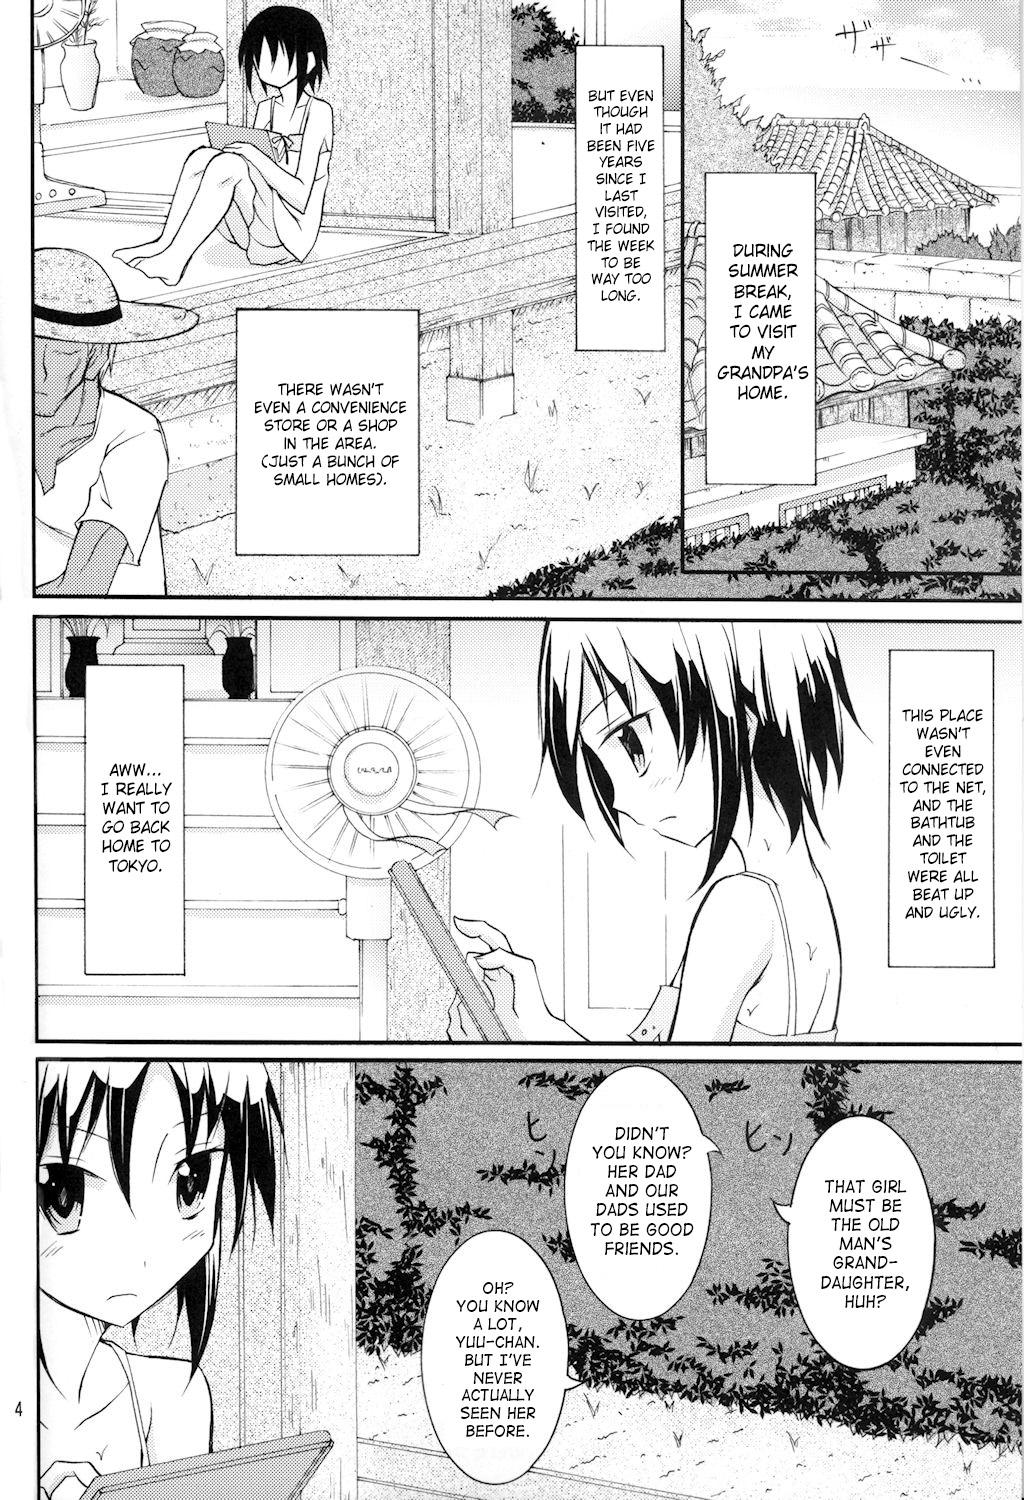 Rebolando Supponpon de Umi Asobi! Nalgona - Page 4